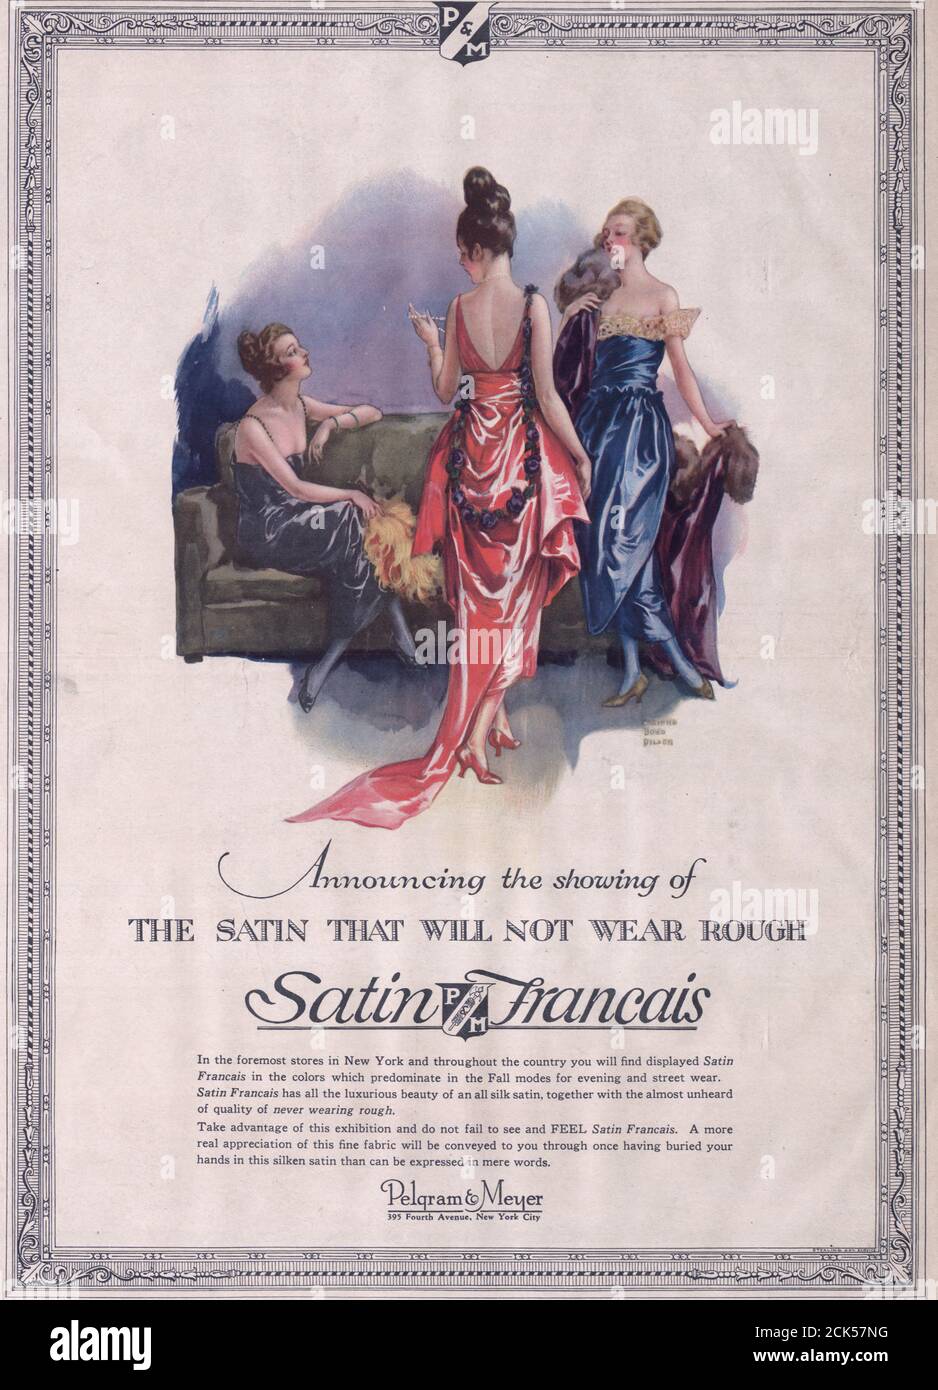 Ankündigung der Vorführung des Satins, die nicht rau tragen wird - Satin Francais - Werbung, 1919 Stockfoto